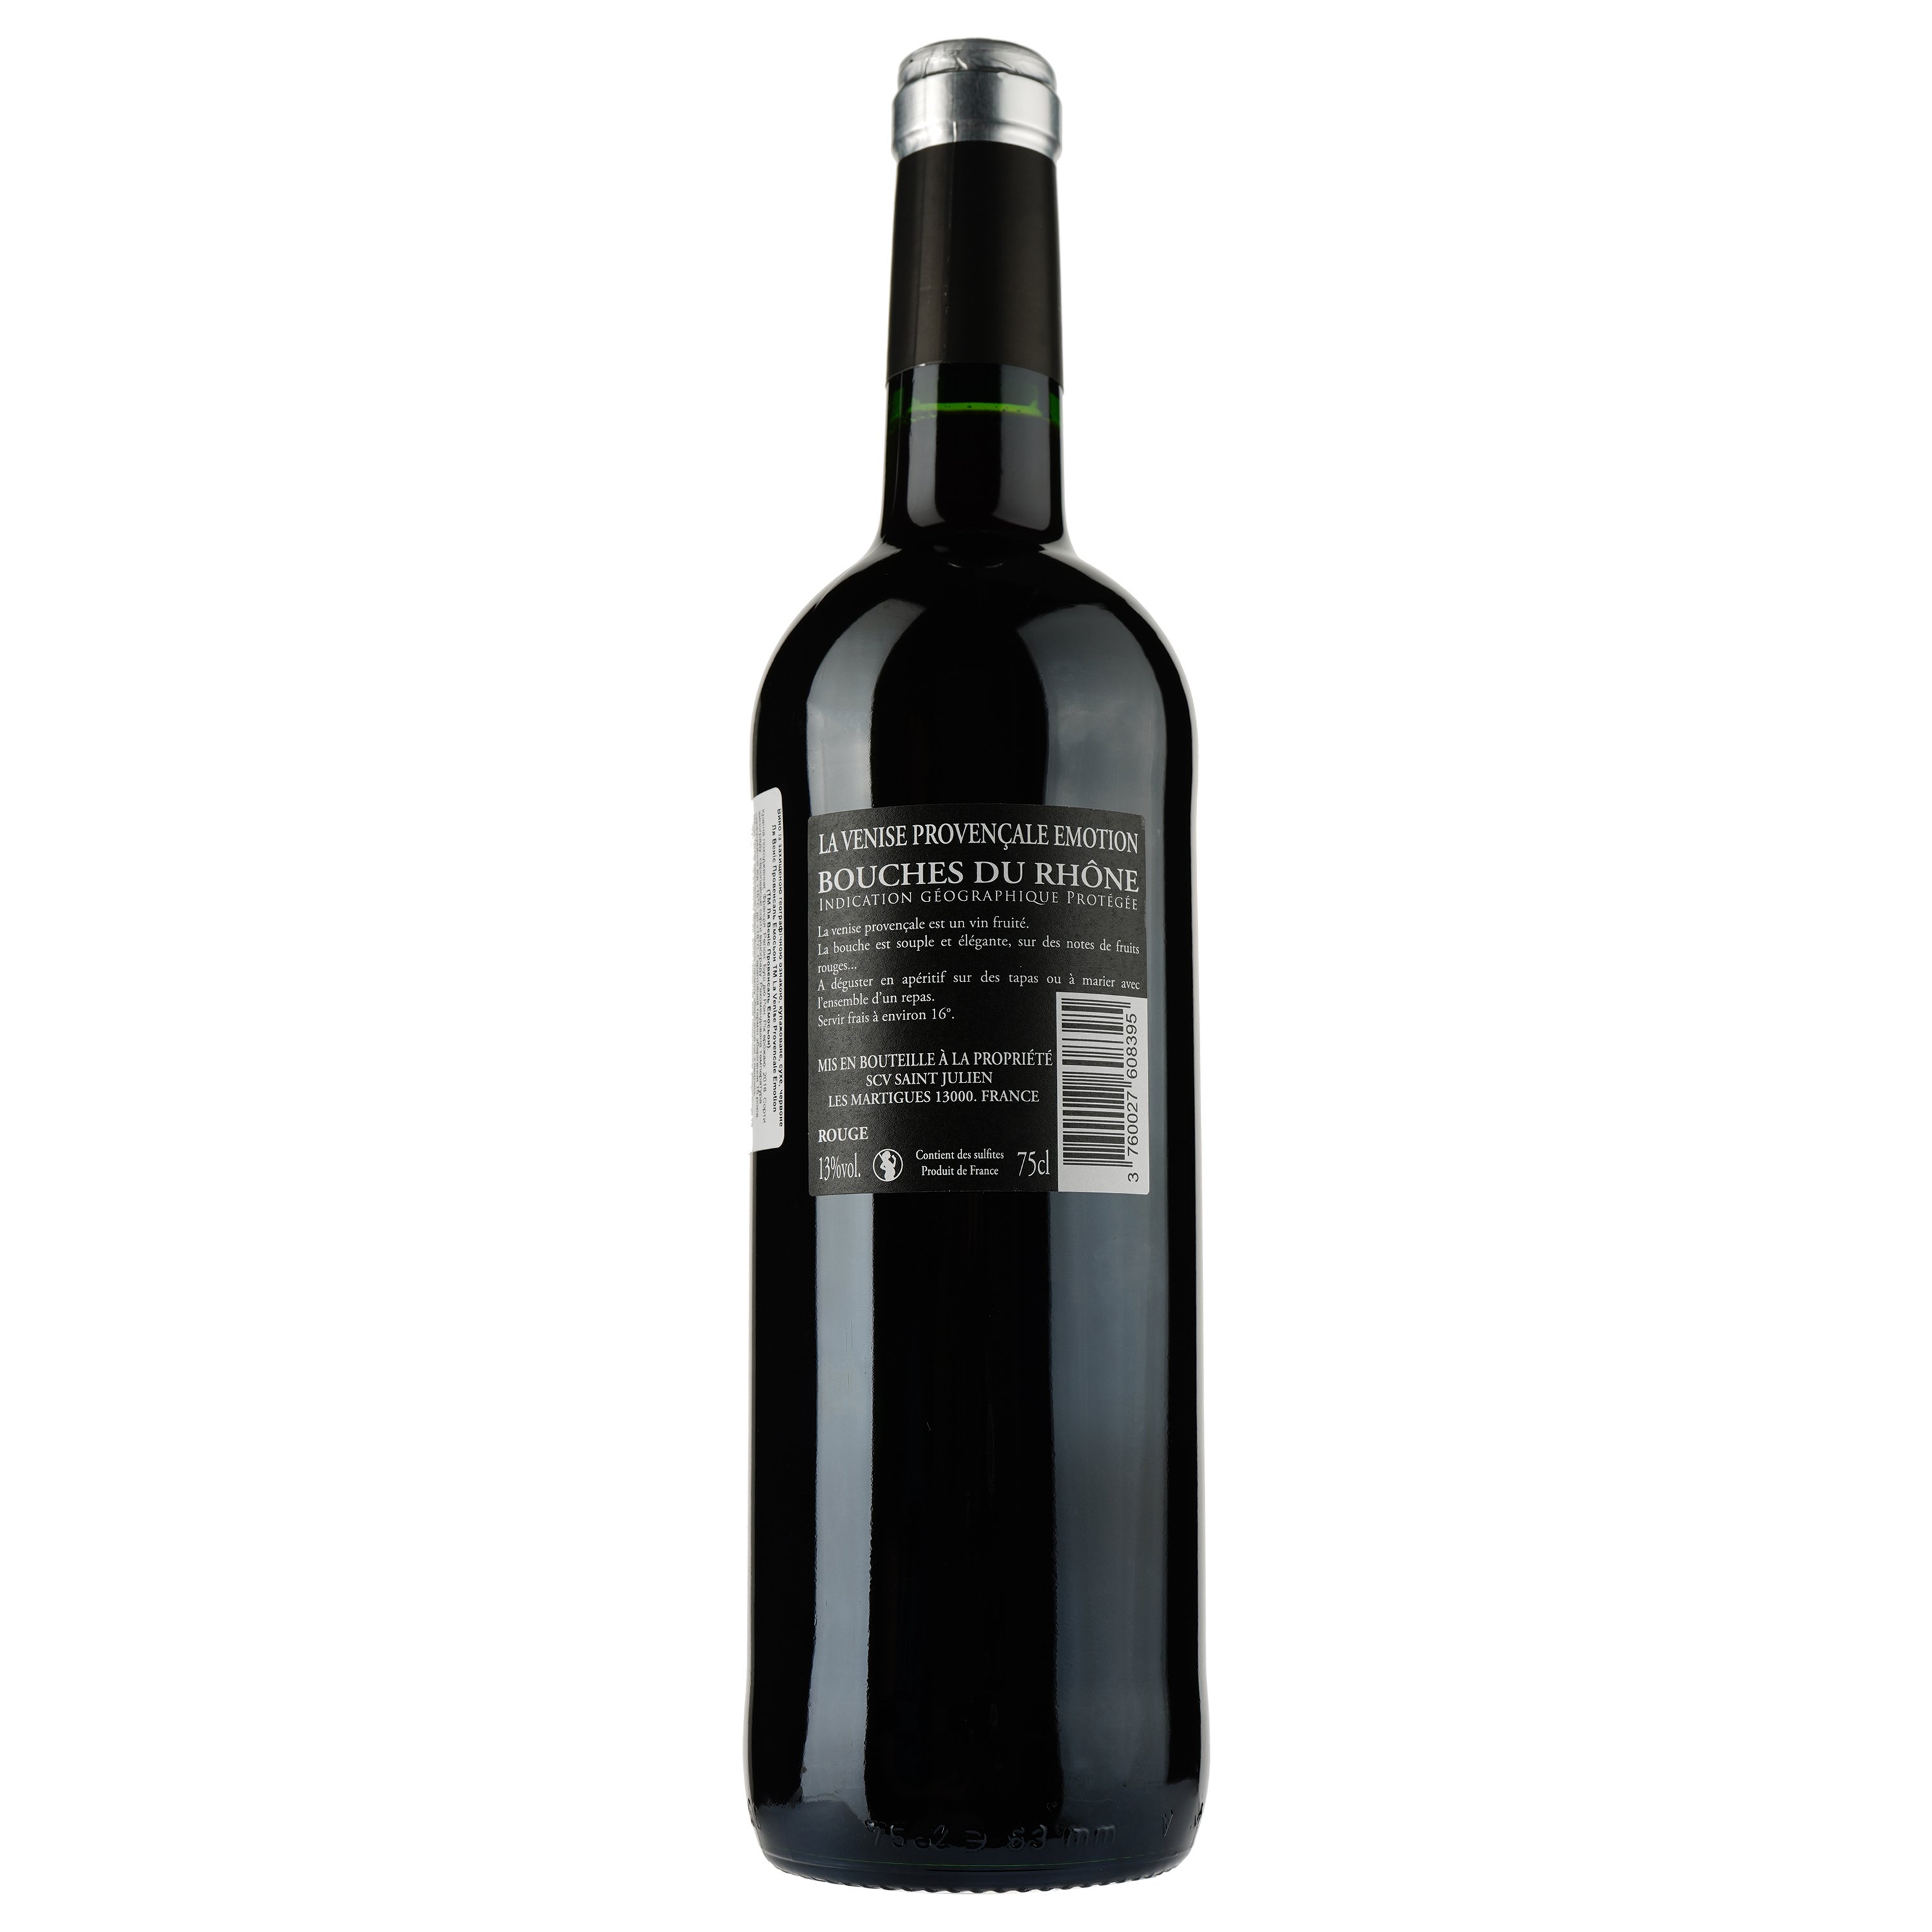 Вино La Venise Provencale Emotion Rouge IGP Bouches du Rhone, красное, сухое, 0,75 л - фото 2